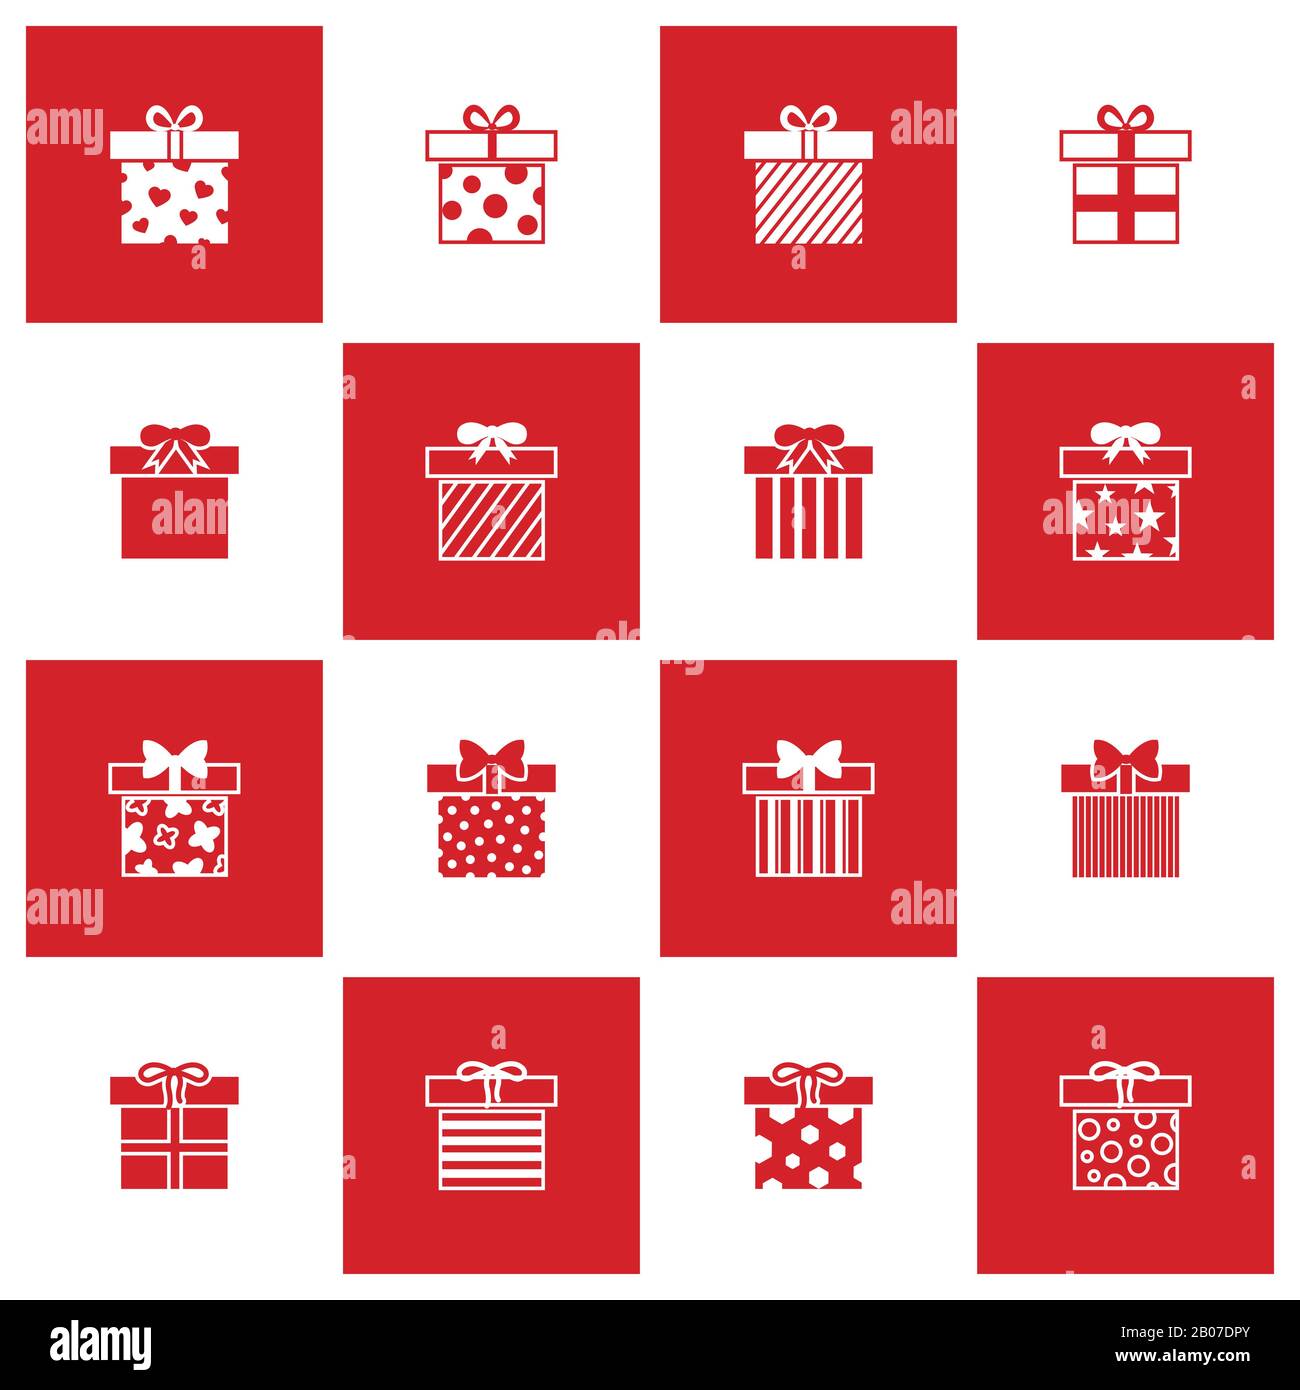 Weihnachtsgeschenkboxen in rot-weißer Farbe. Symbole für Vektorgrafiken festgelegt Stock Vektor